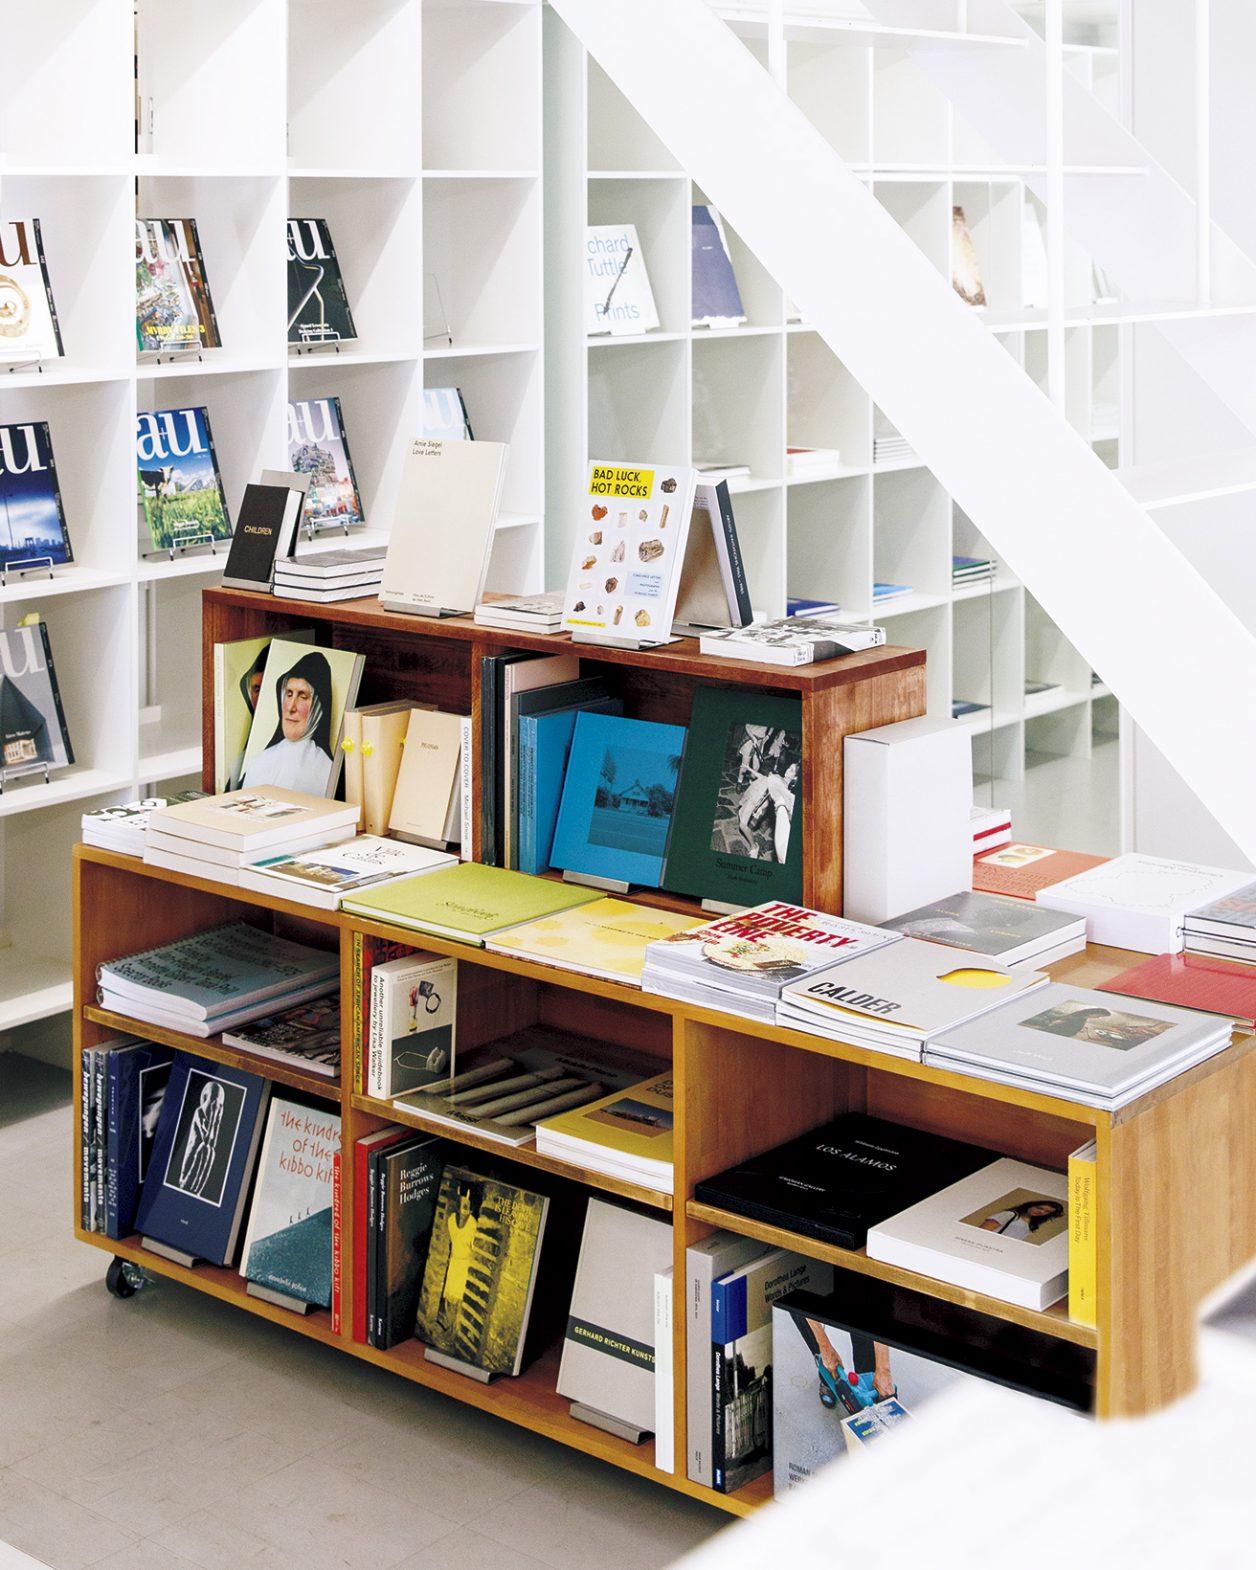 すべての本を建築書と捉え、新たな視点を与える書店が南青山にオープン。